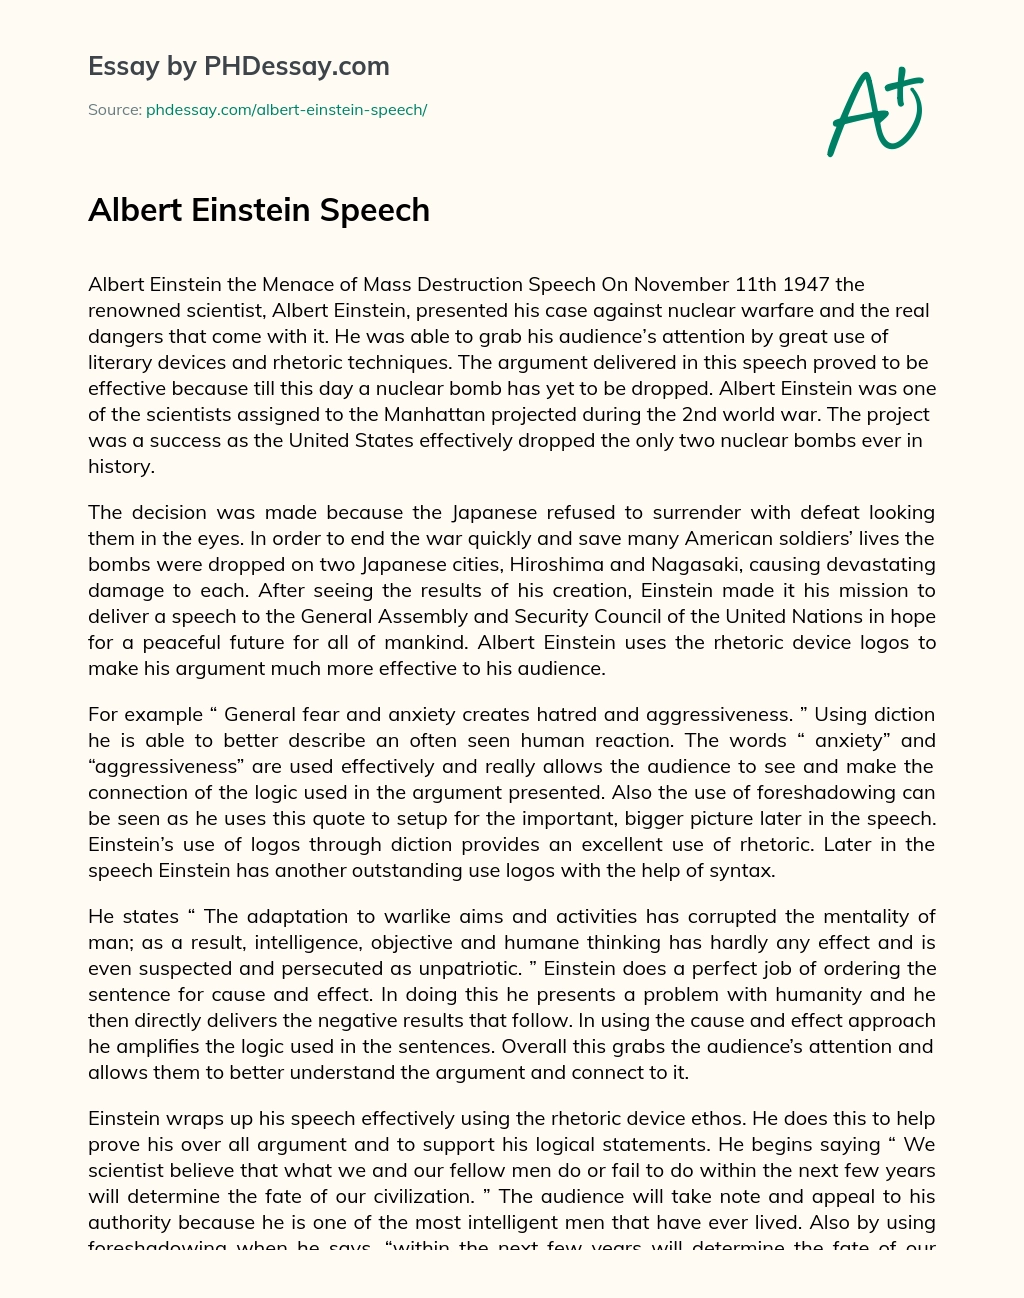 Albert Einstein Speech essay